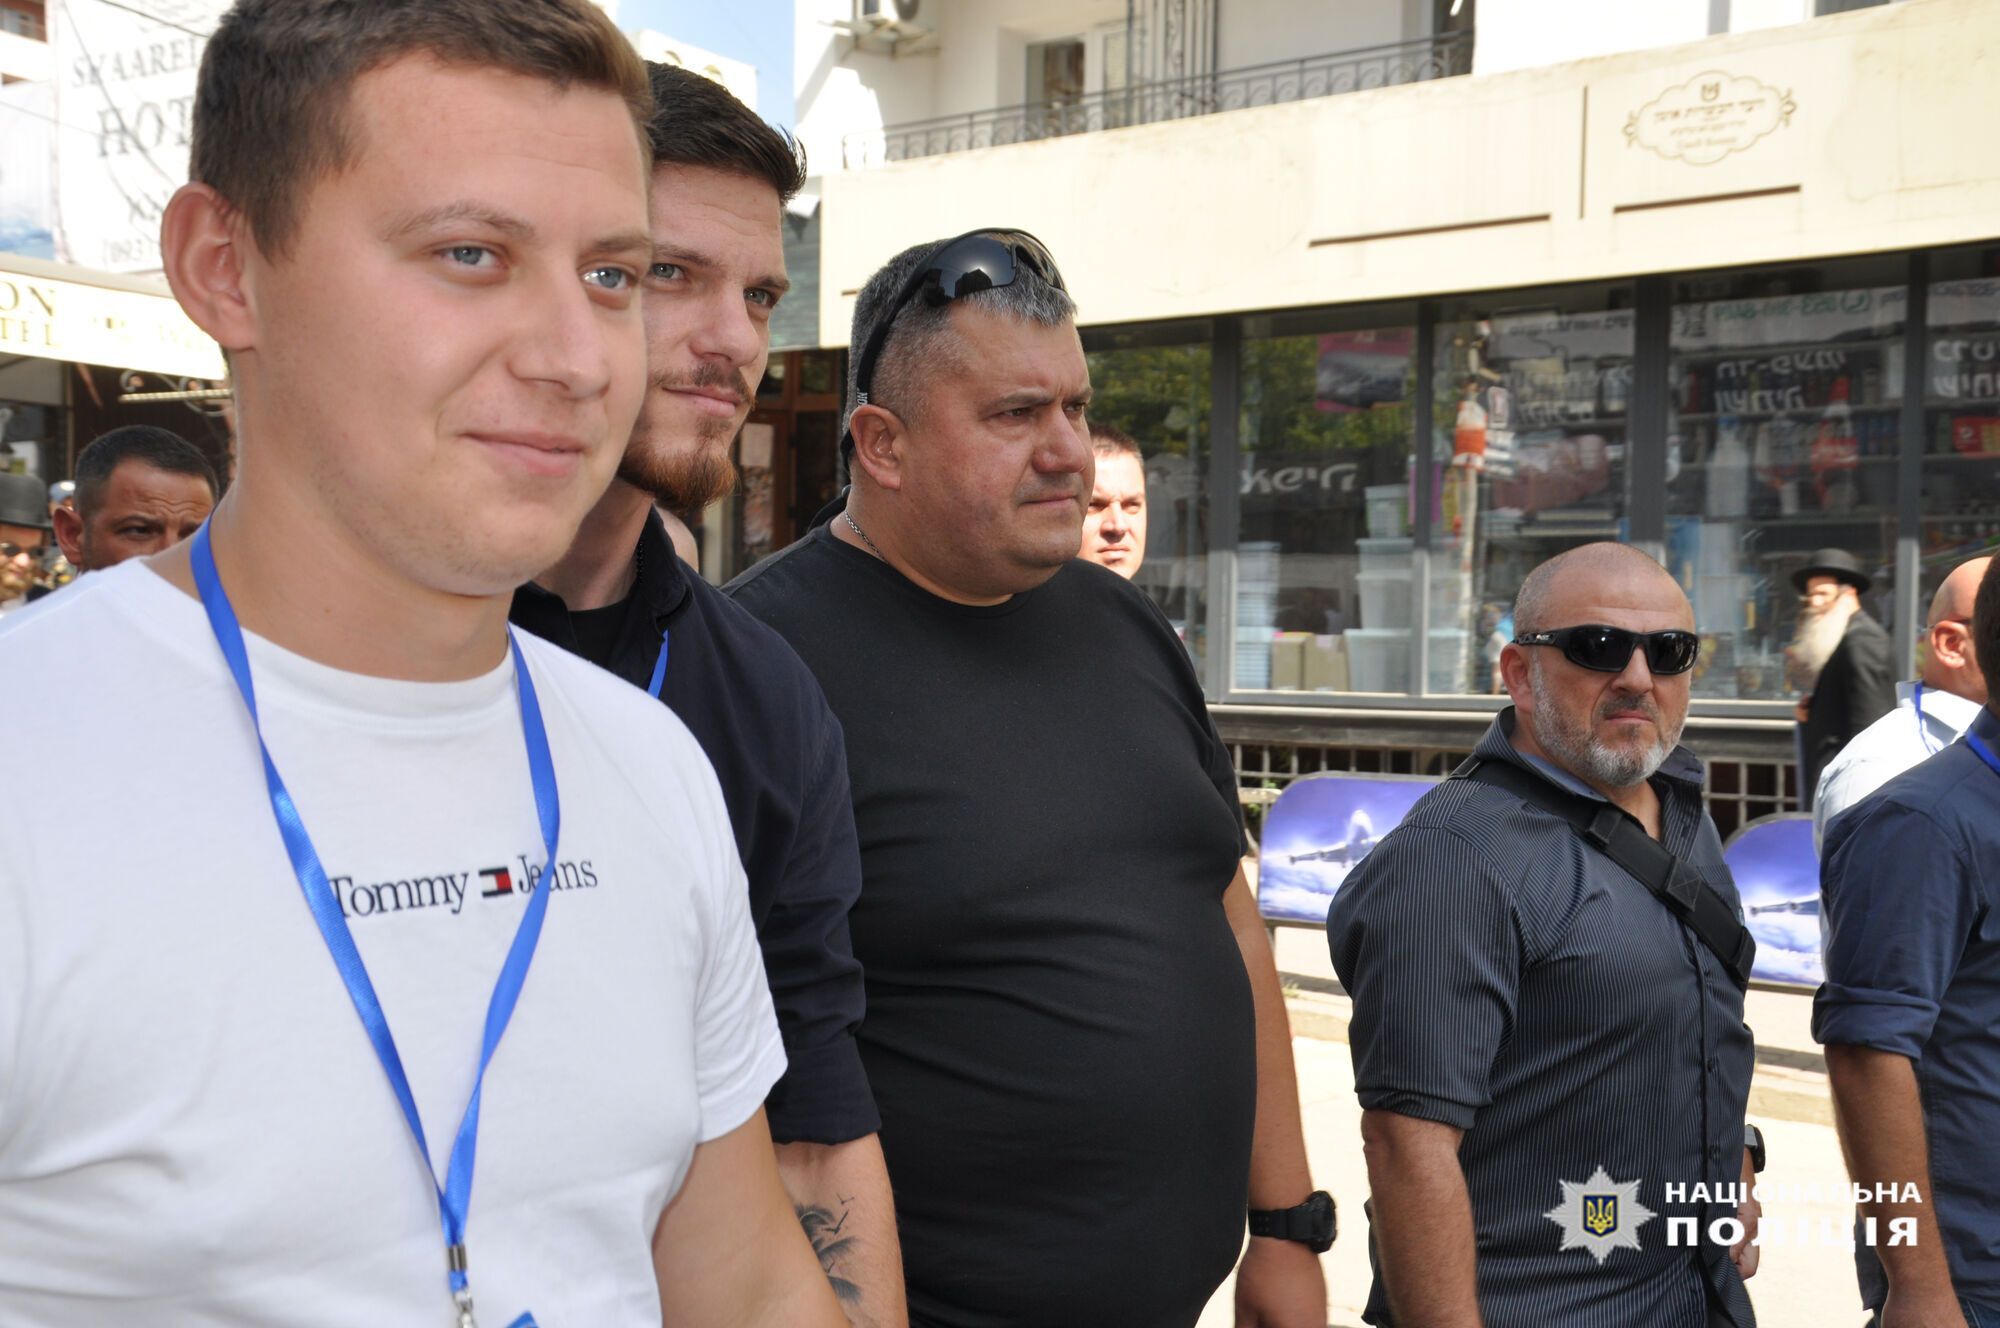 В Умань прибыла полиция Израиля: будет помогать на время празднования Рош га-Шана. Фото и видео